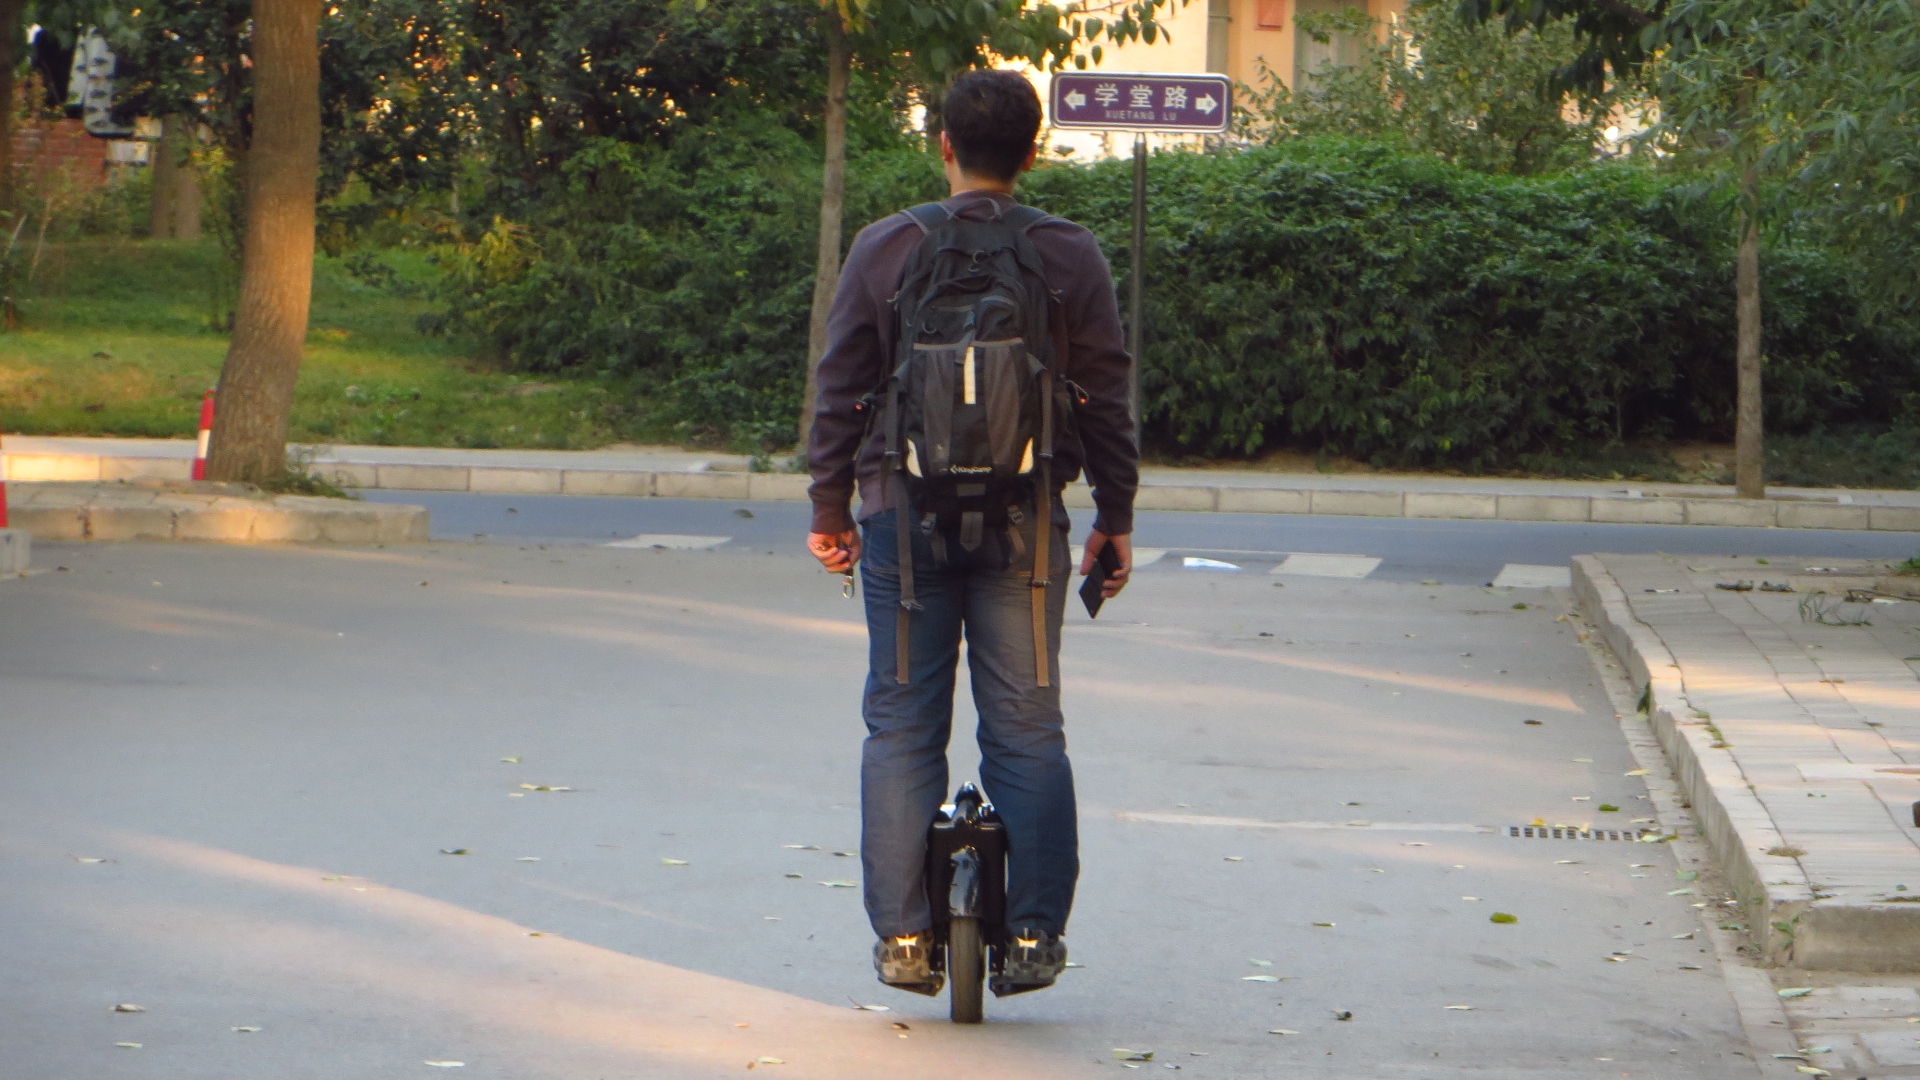 a man riding a skate board down a street